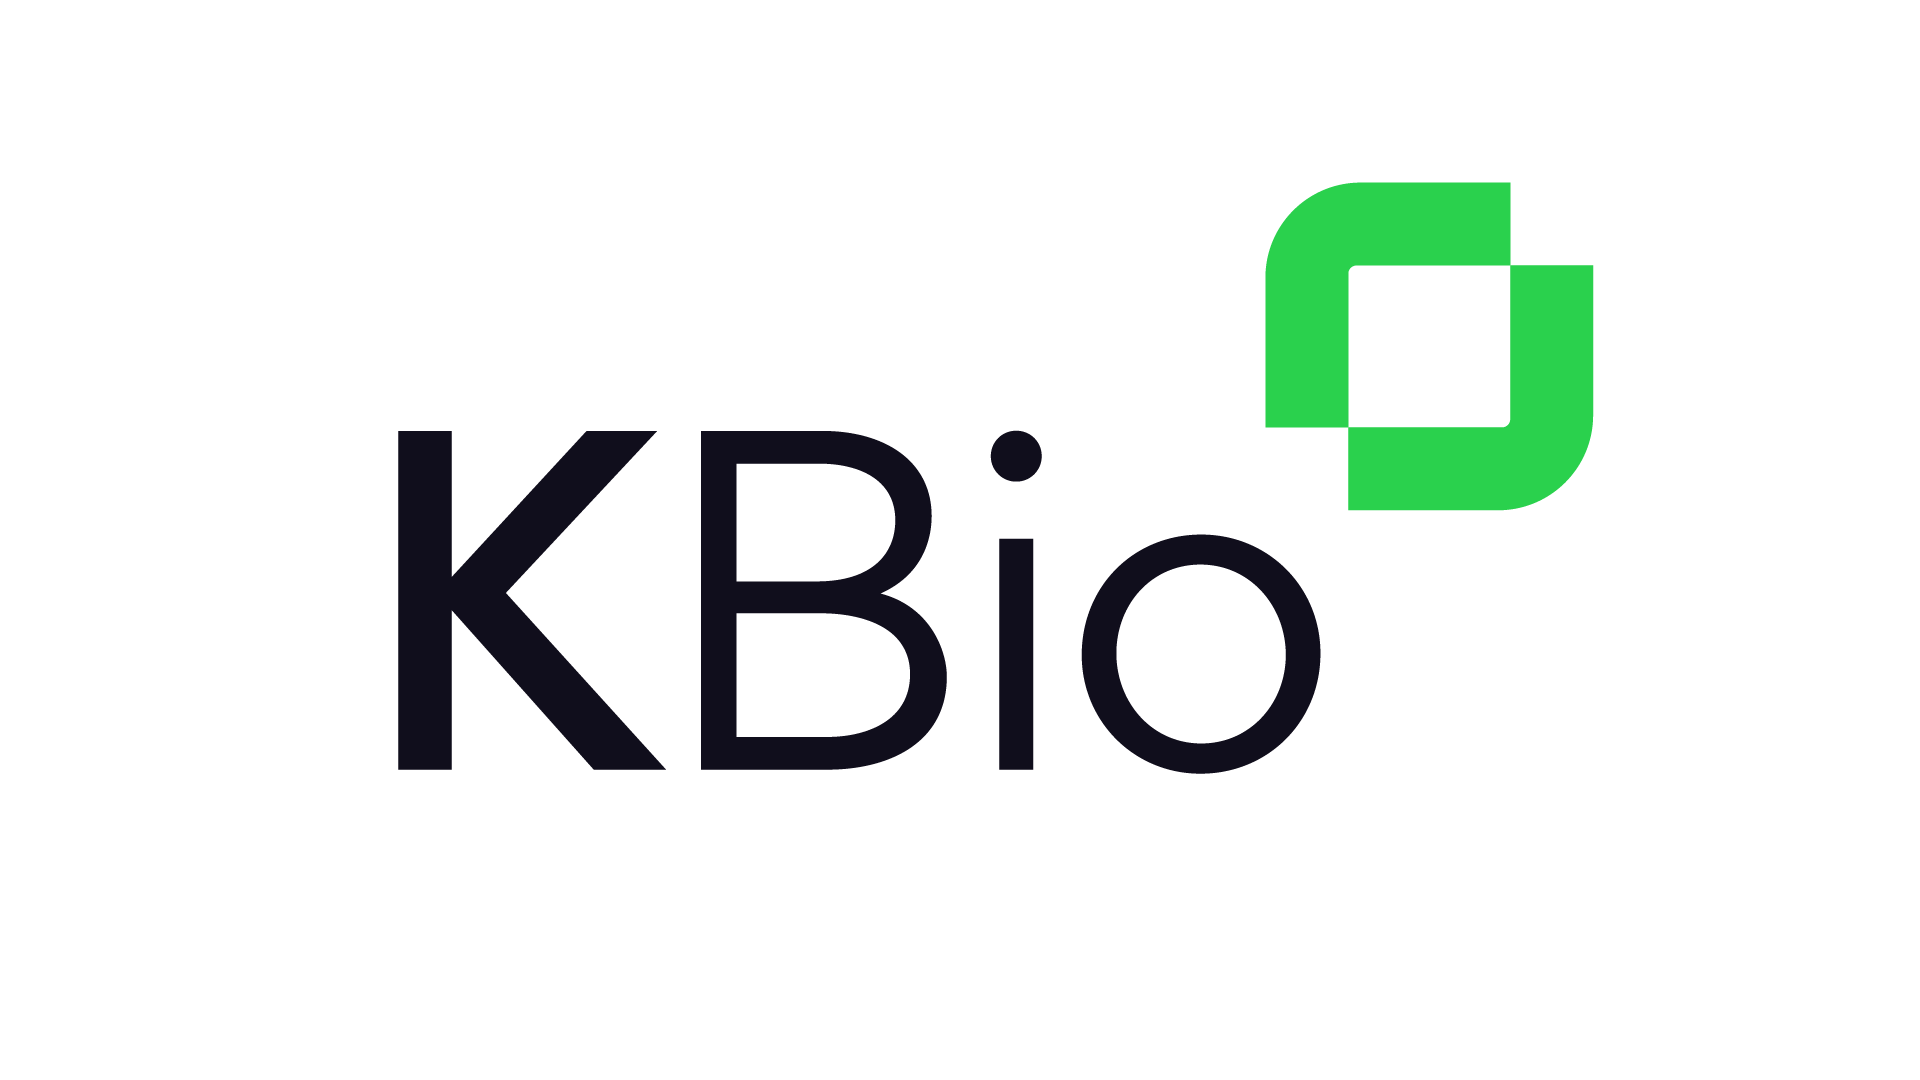 Kbio logo.png